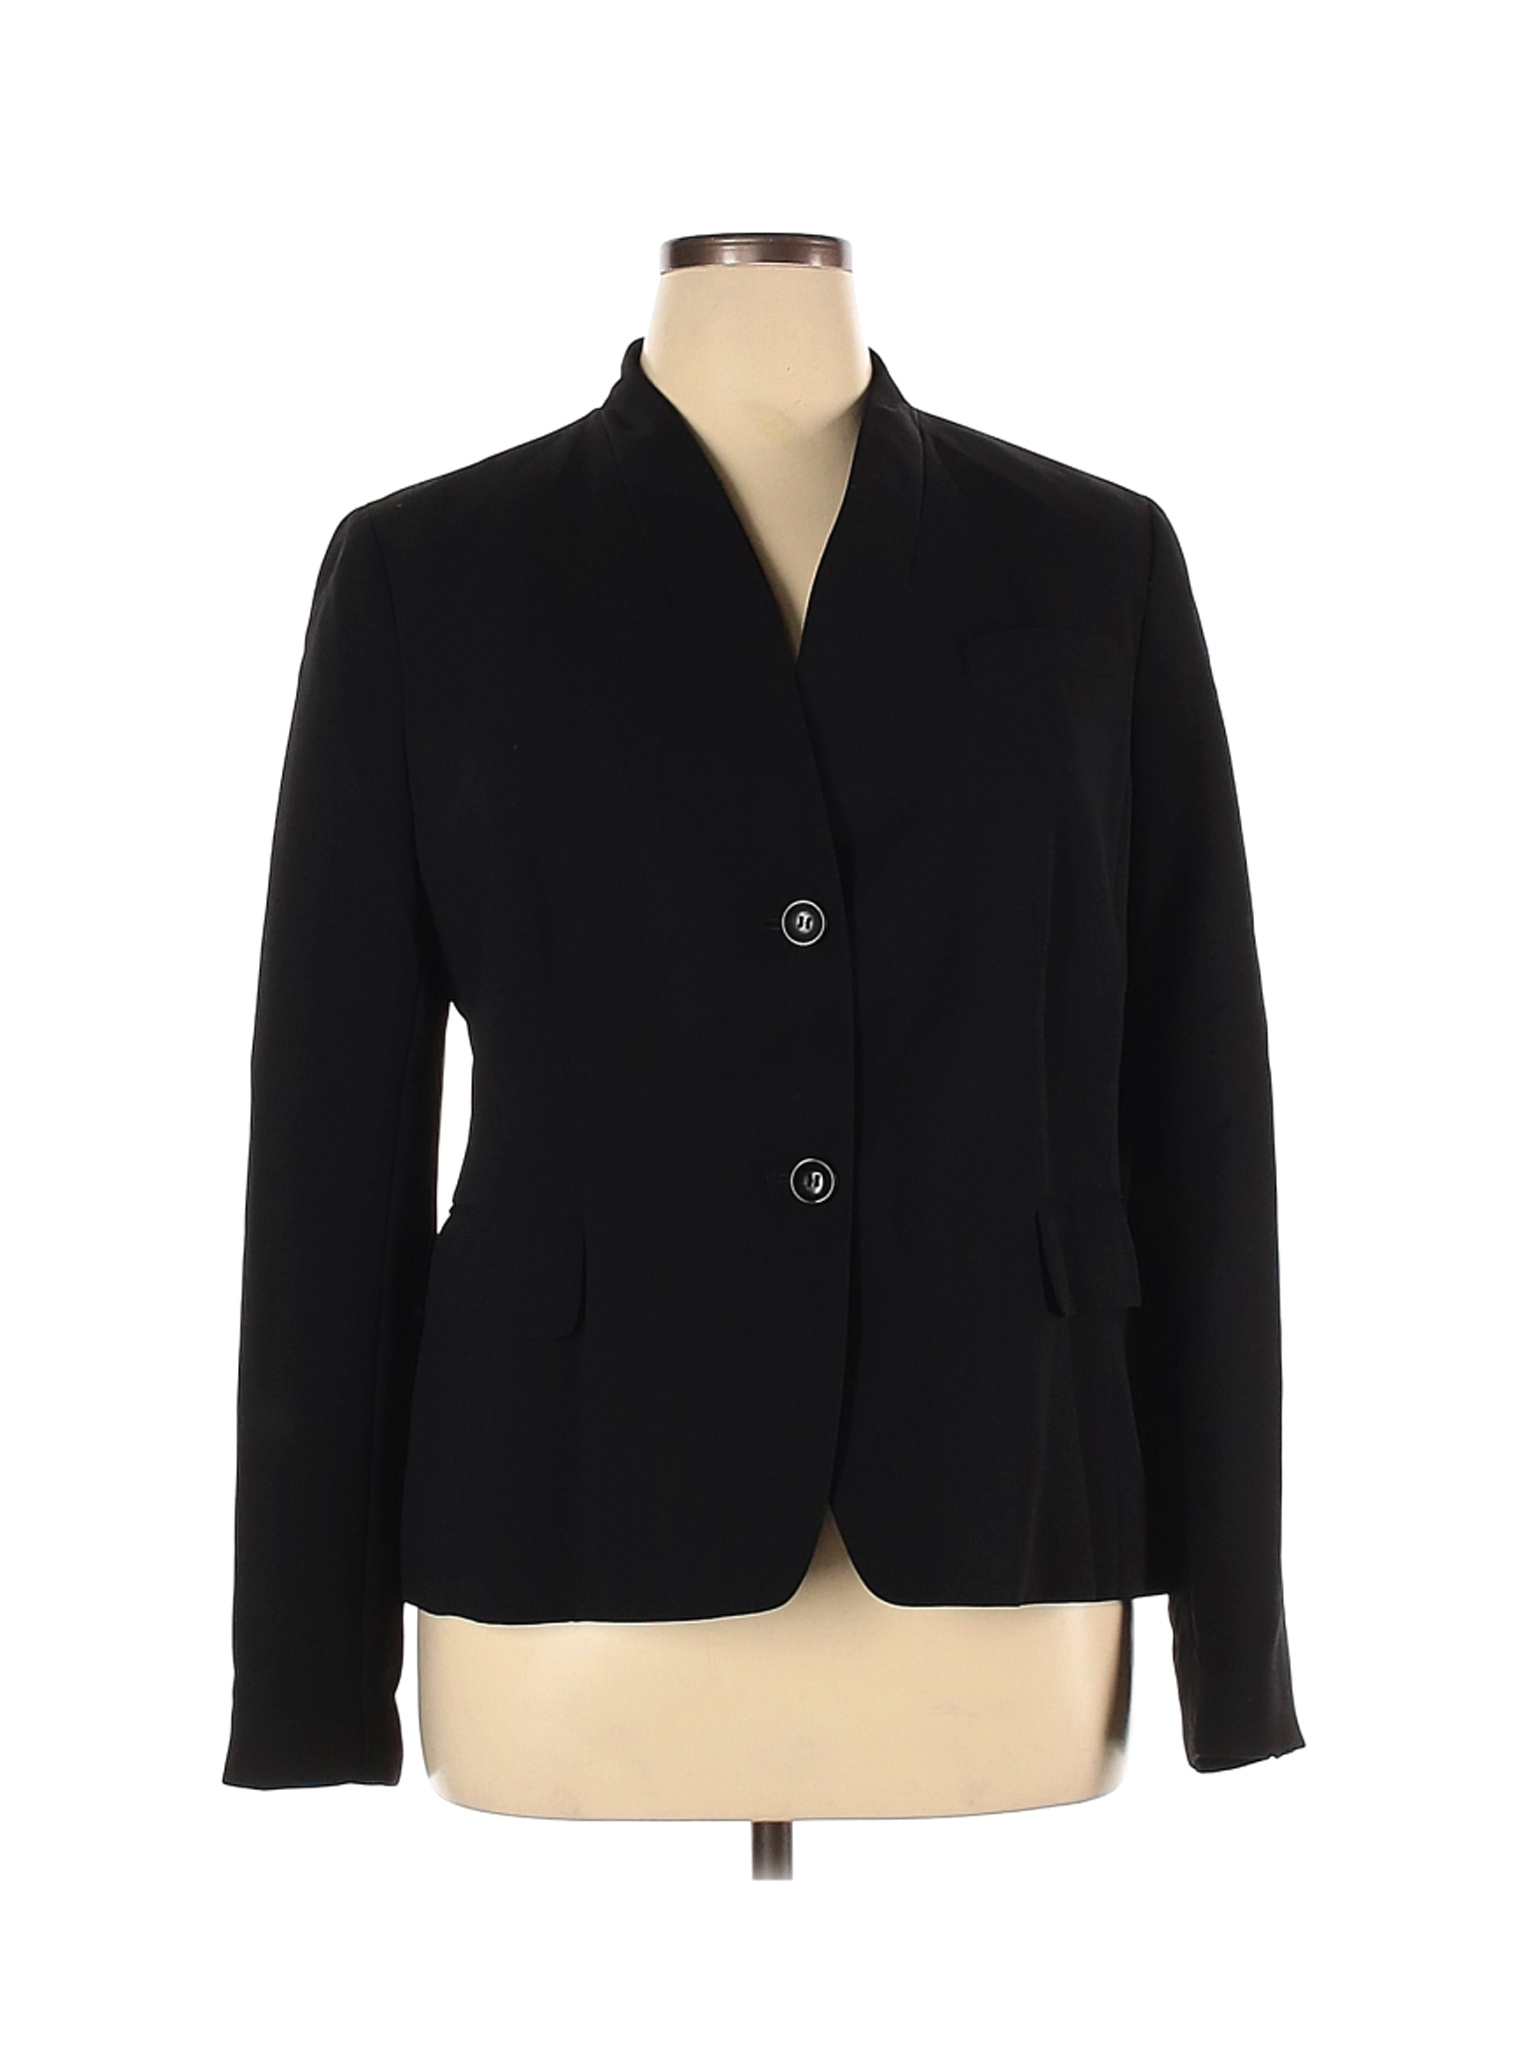 Talbots Women Black Jacket 16 | eBay